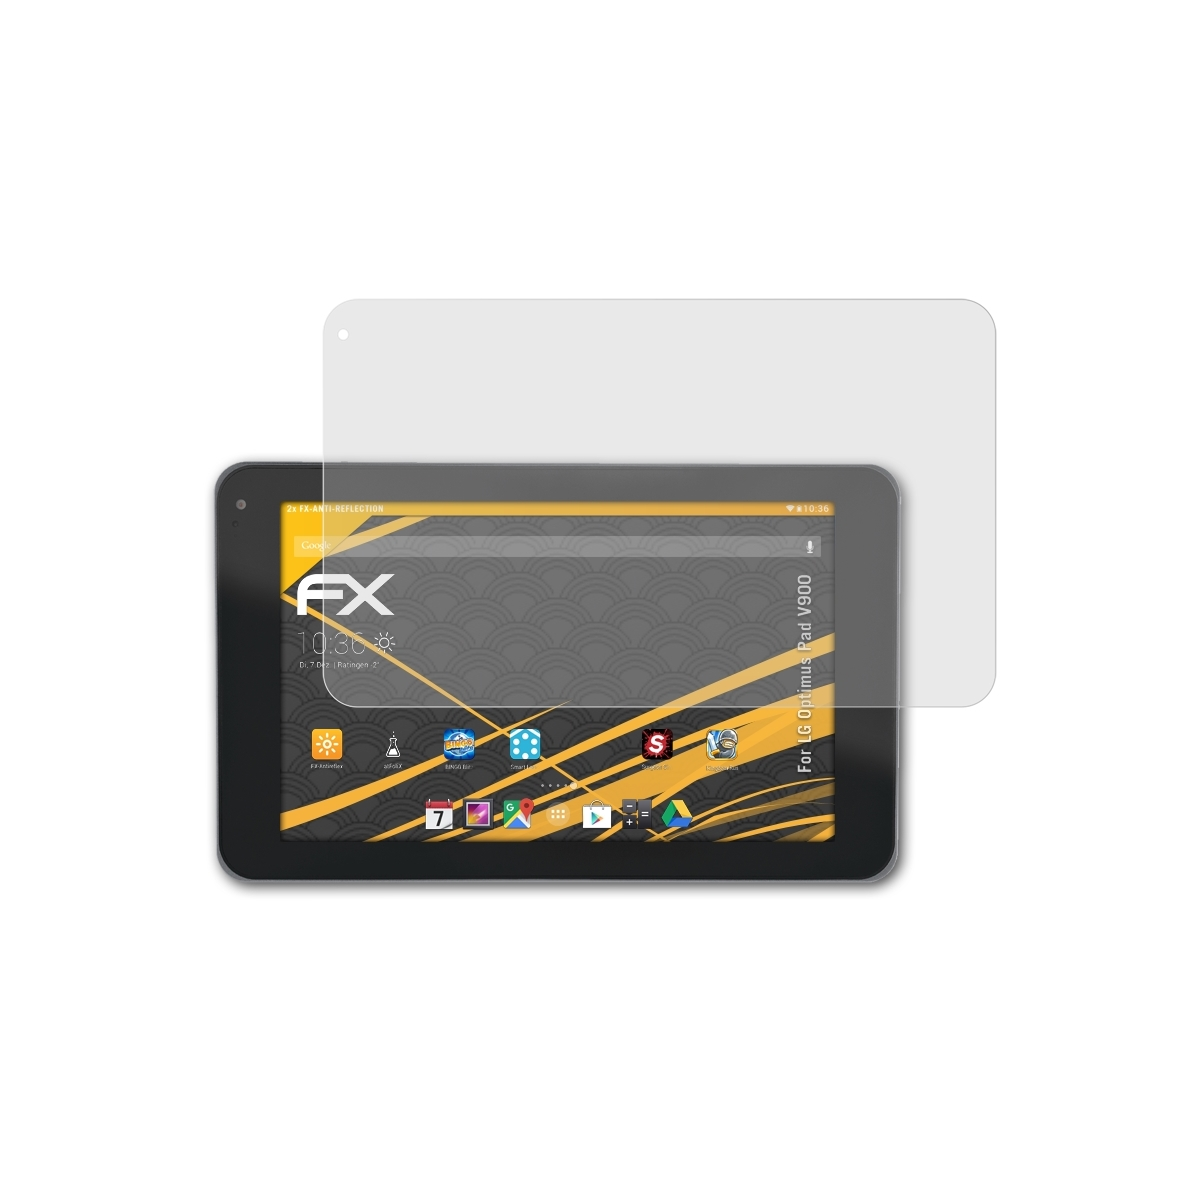 ATFOLIX 2x FX-Antireflex Optimus Pad LG Displayschutz(für (V900))